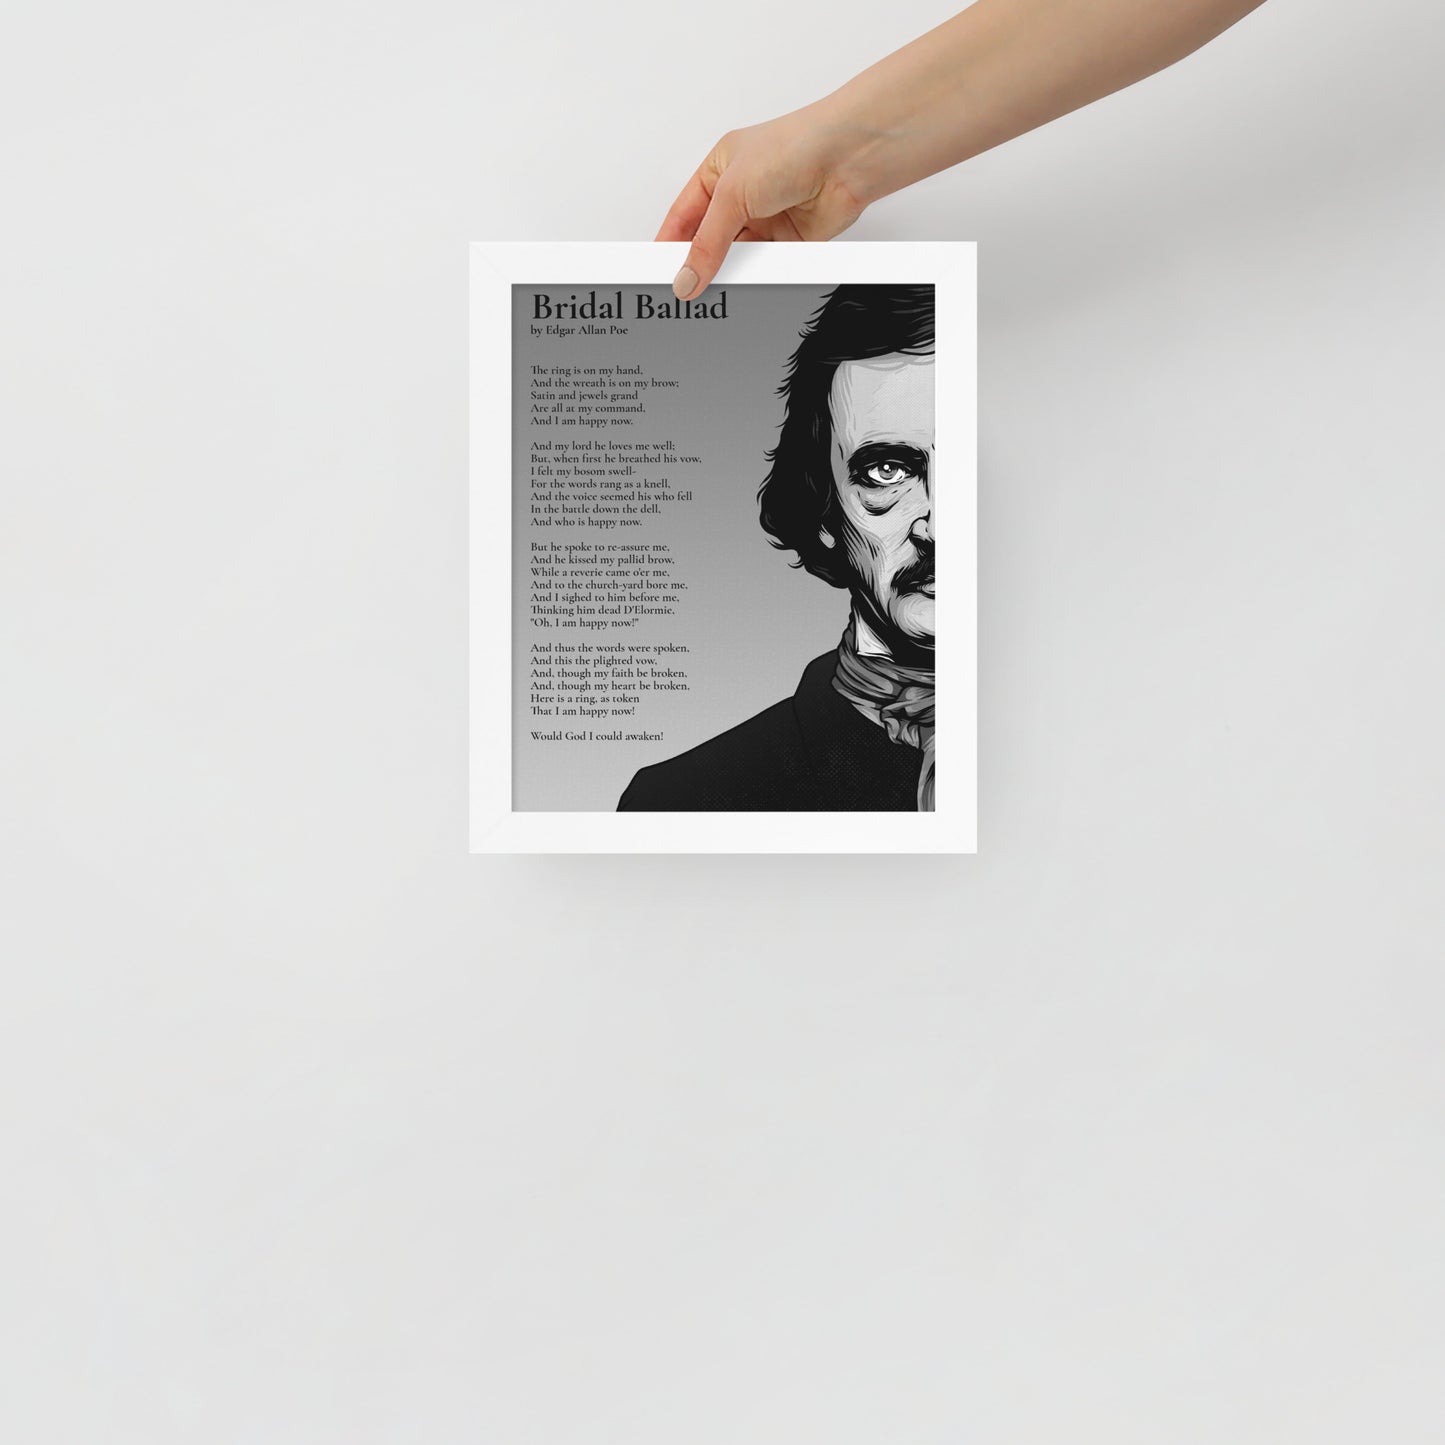 Edgar Allan Poe's 'Beloved Physician' Framed Matted Poster - 8 x 10 White Frame